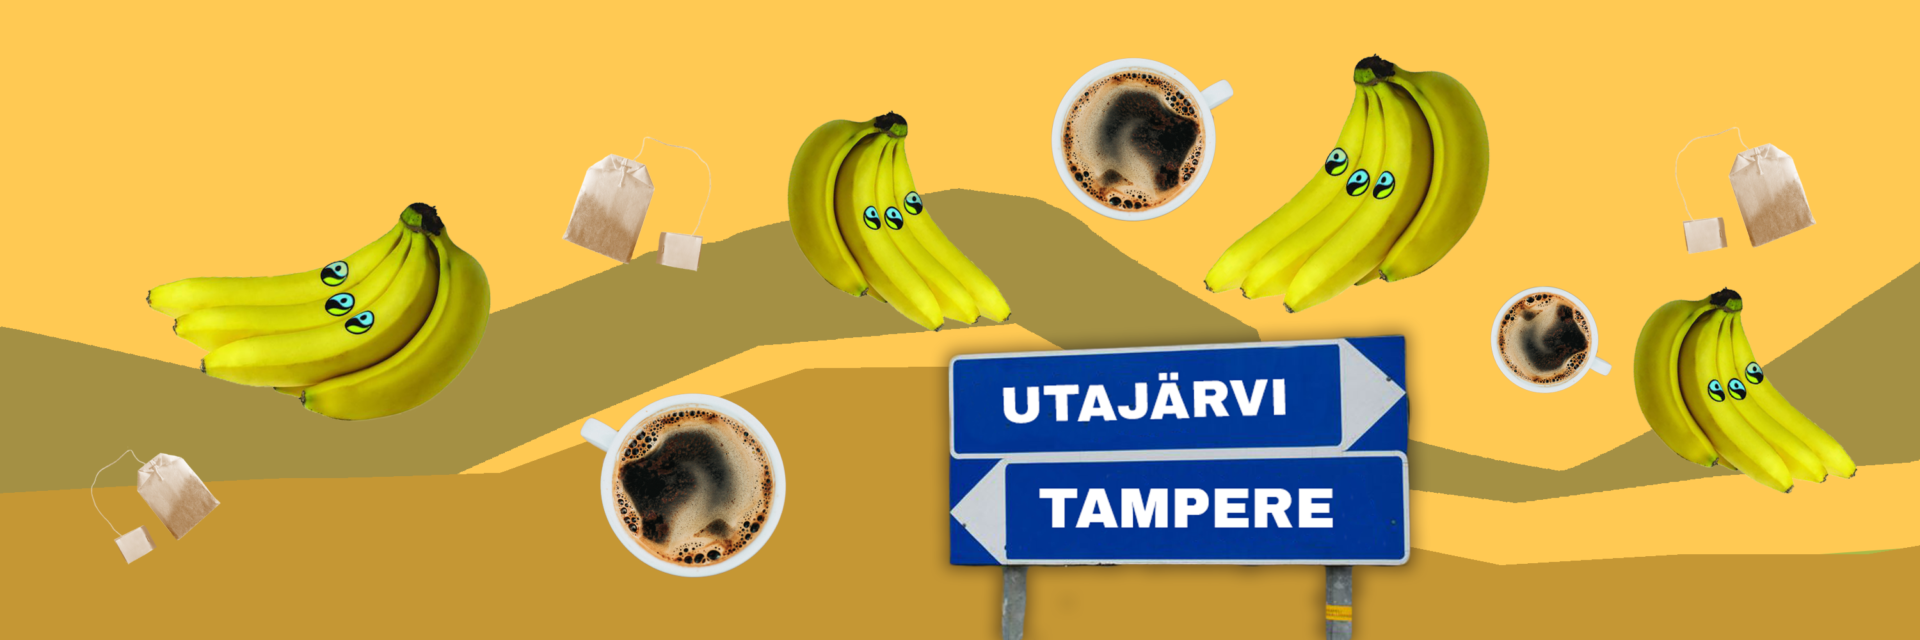 Reiluja banaaneja vai mätiä omenia? Suomen kaupungit edistävät reilua kauppaa vaihtelevasti